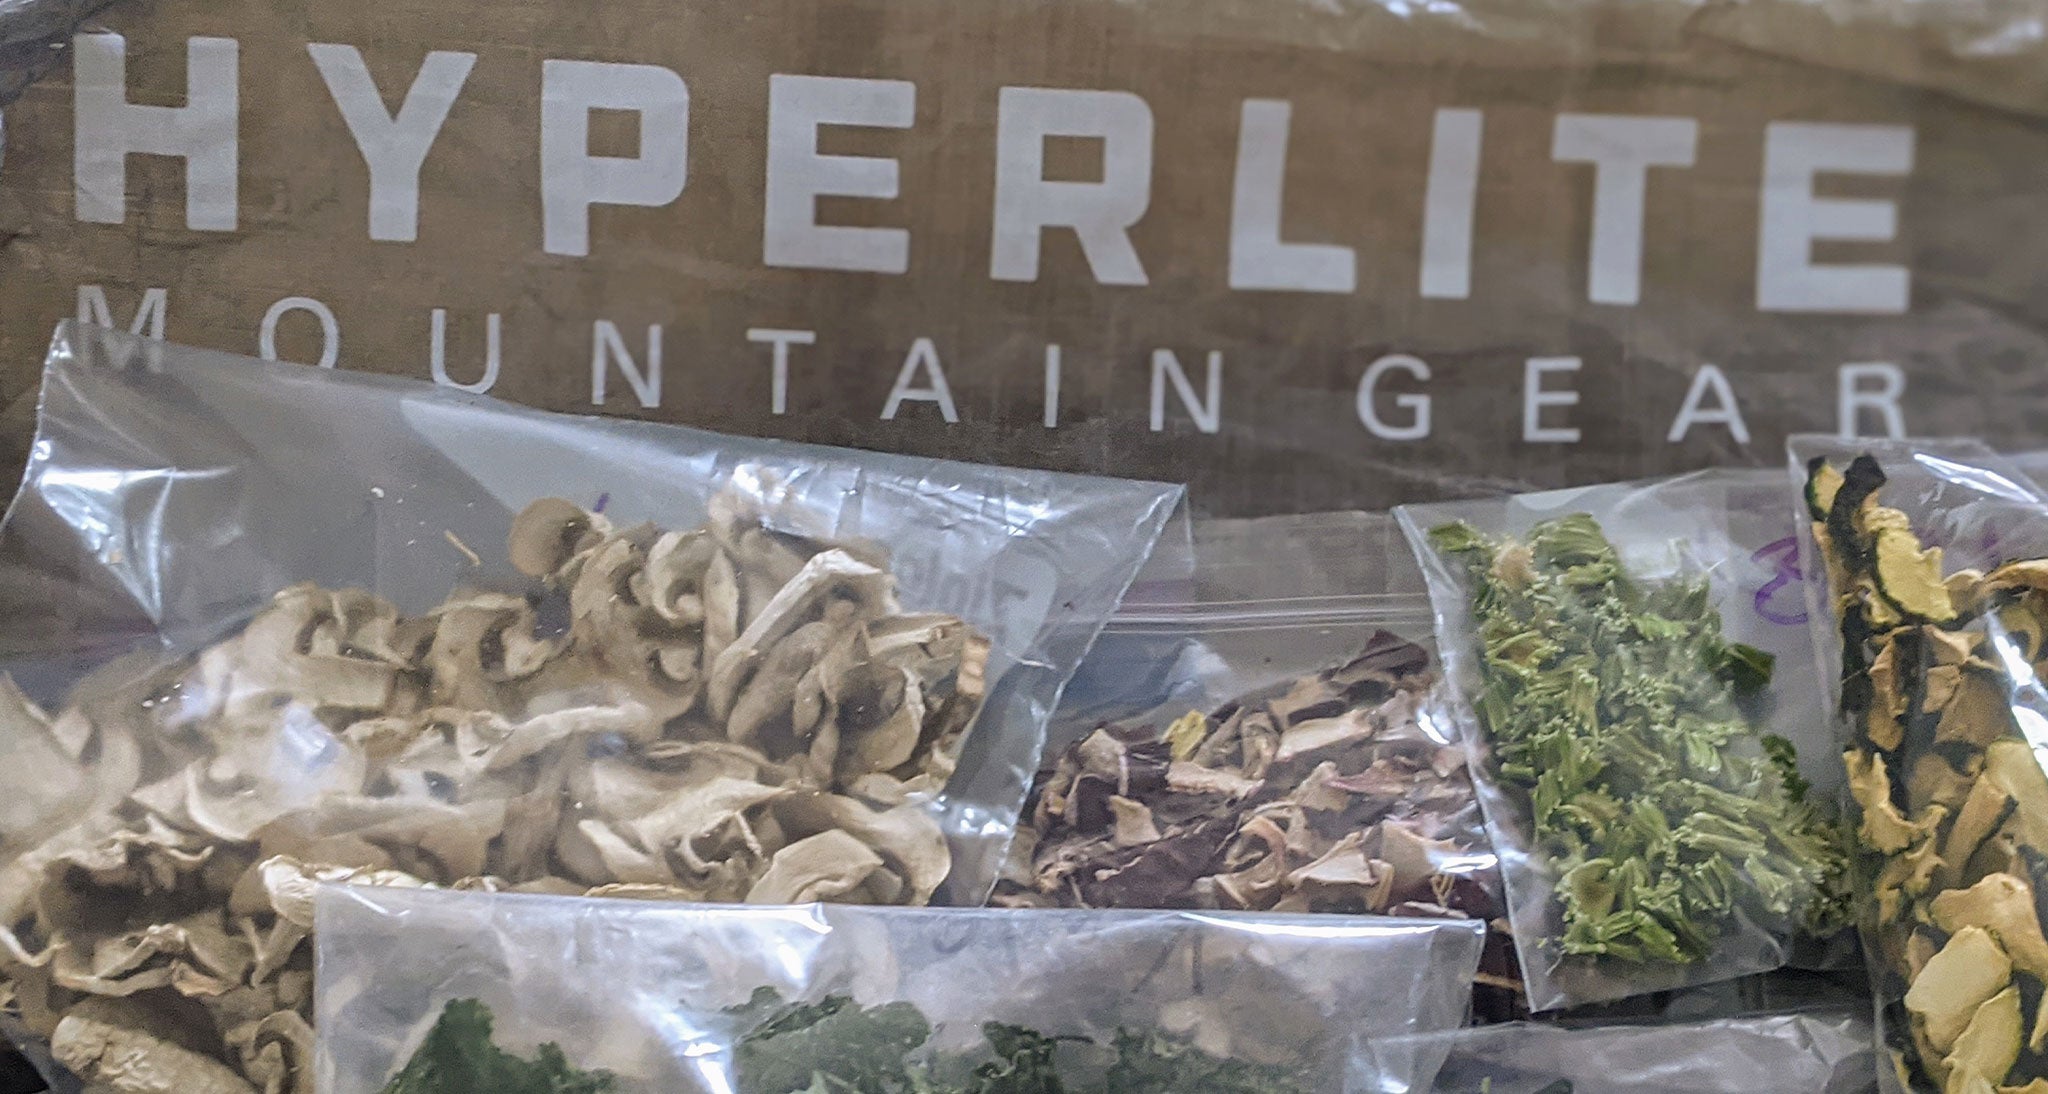 Hyperlite Mountain Gear snack bags